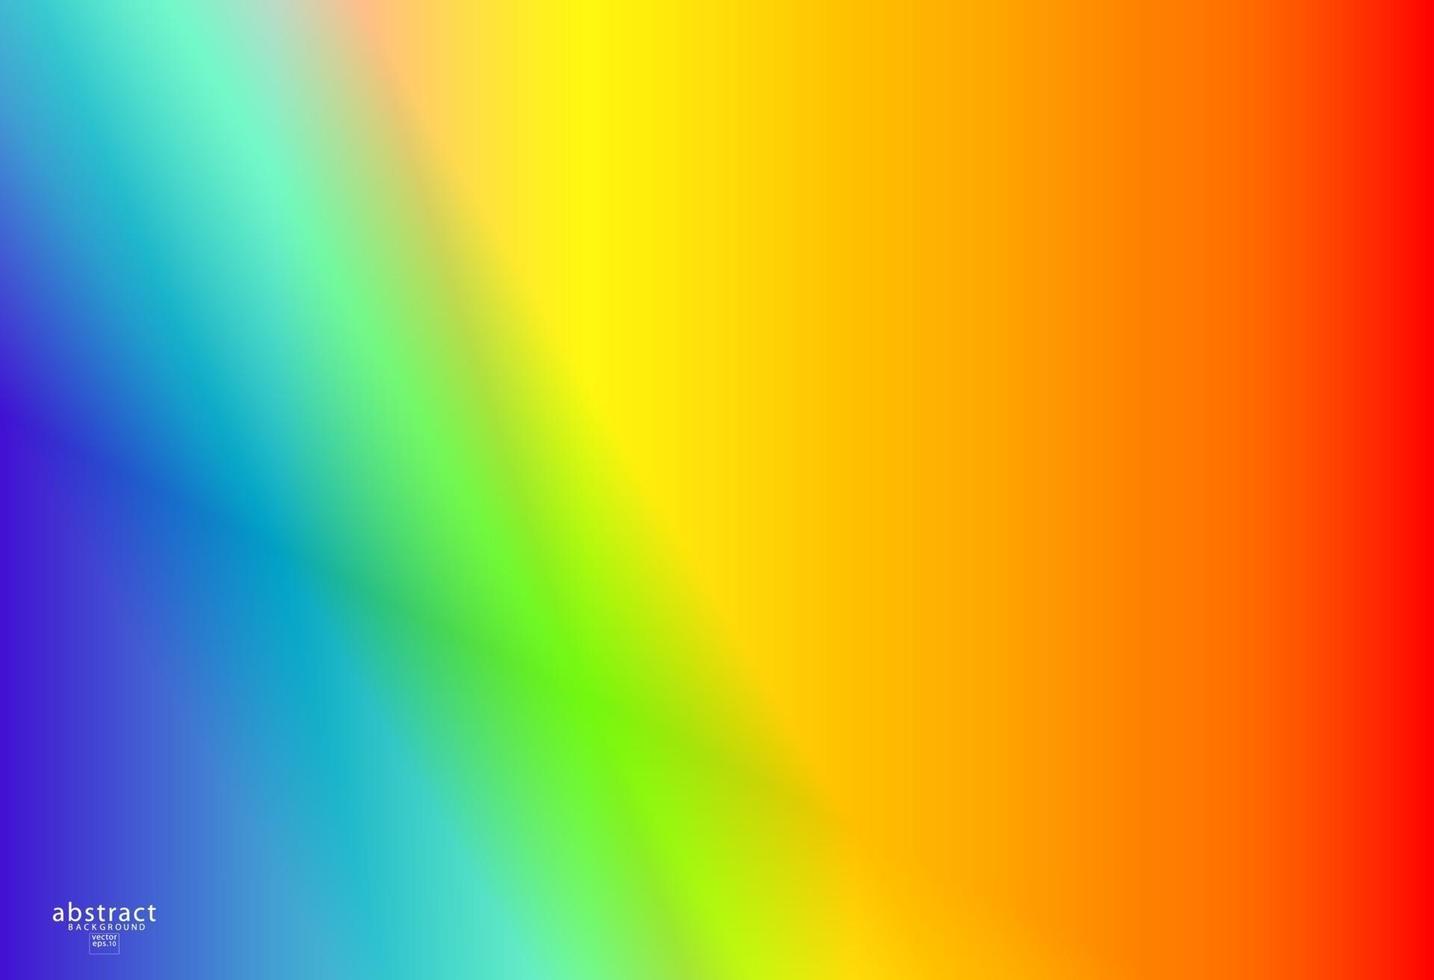 Abstrait maille dégradé flou fond couleurs arc-en-ciel lumineux. modèle de bannière douce lisse et colorée. illustration vectorielle dynamique créative vecteur